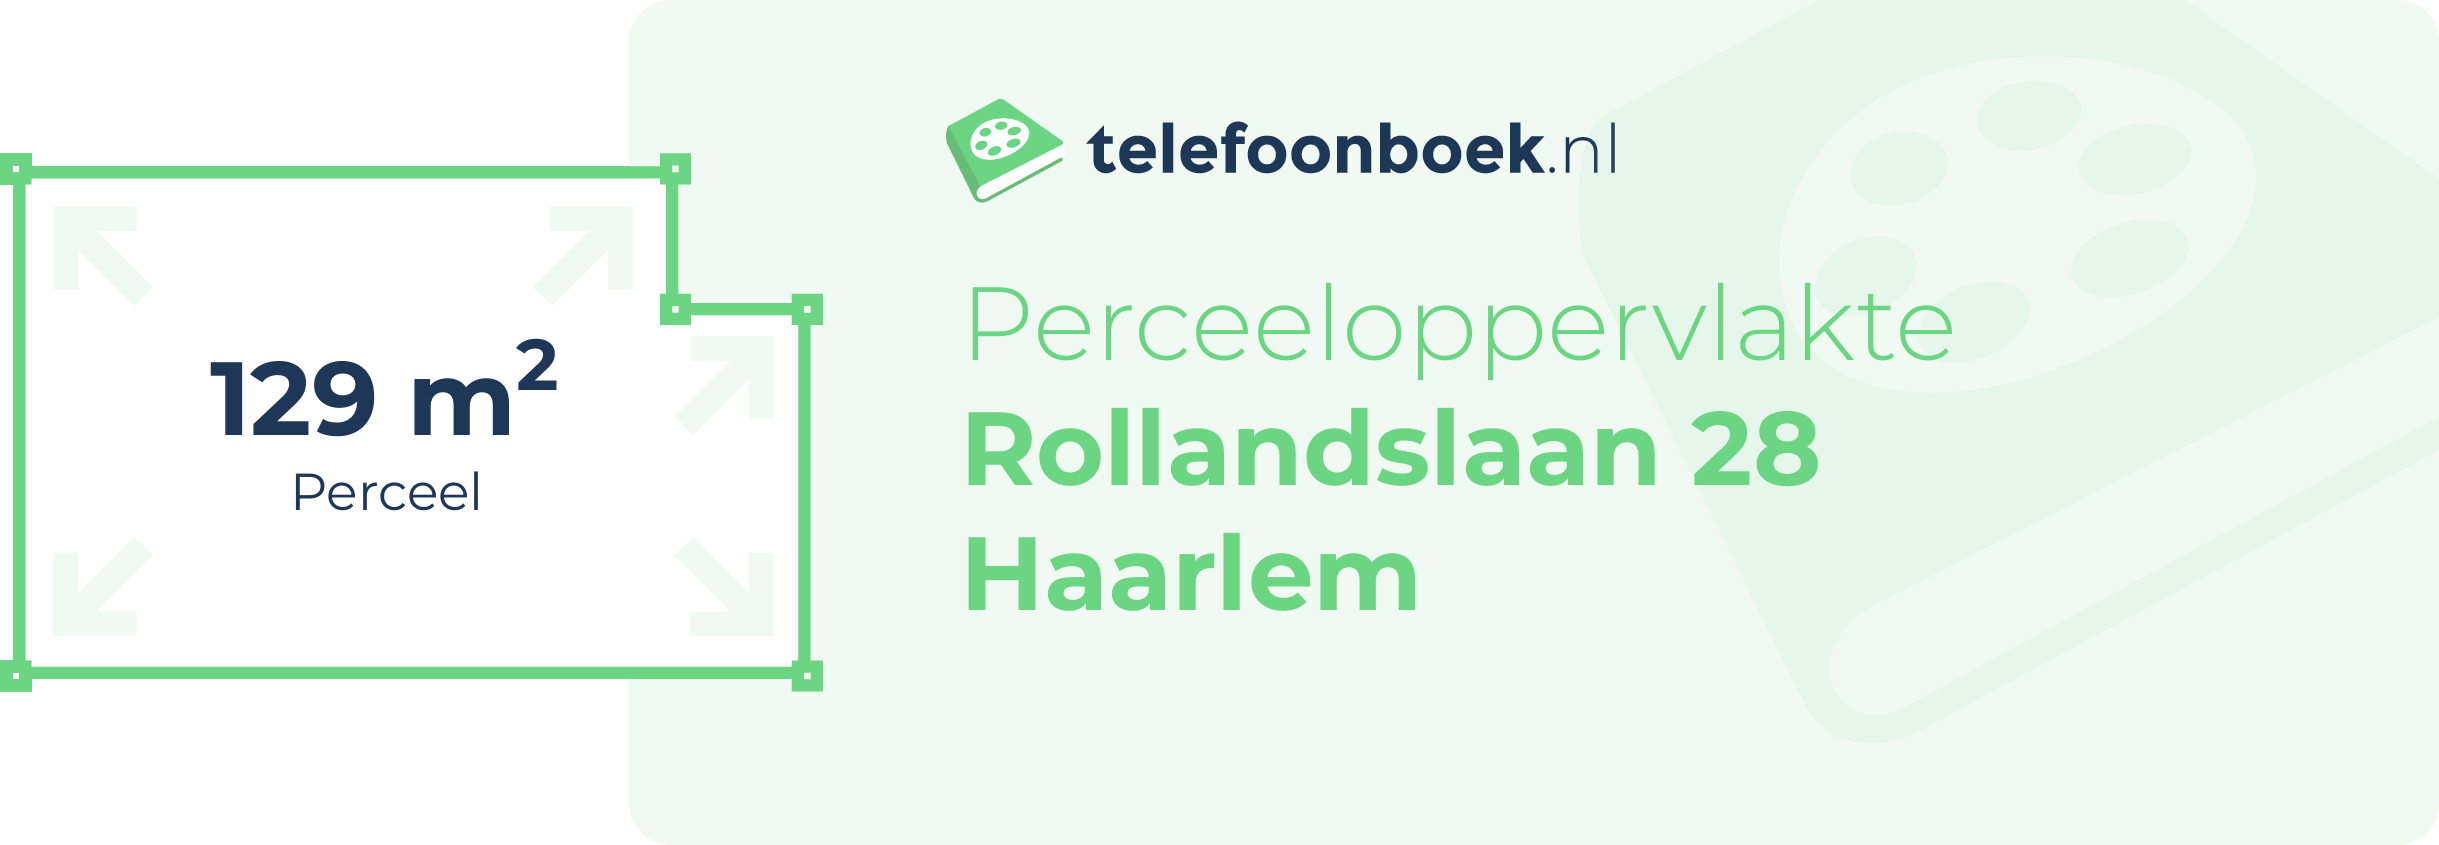 Perceeloppervlakte Rollandslaan 28 Haarlem